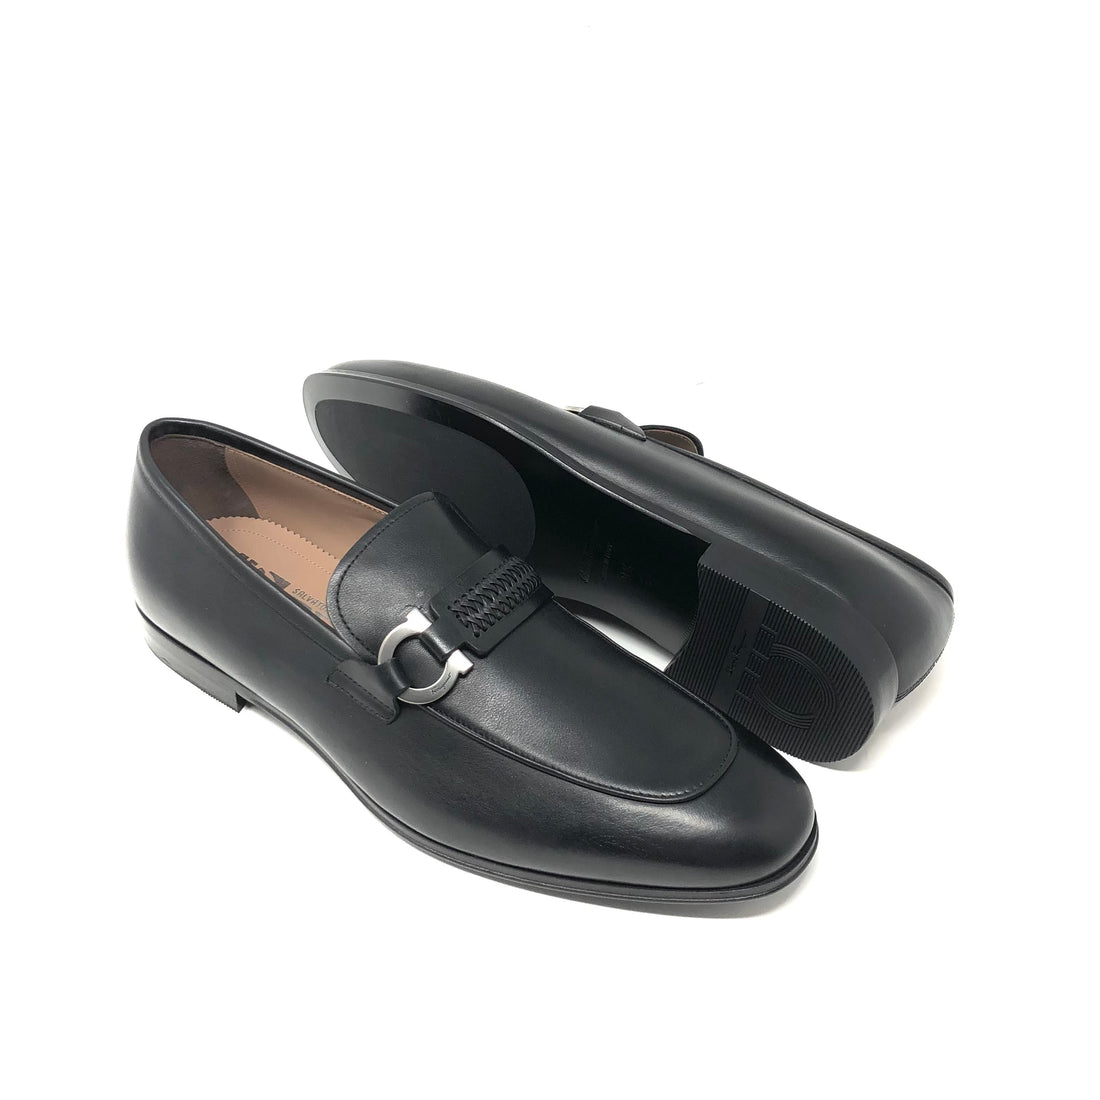  Salvatore Ferragamo Scarlet Mens Black Leather Slip On Loafer  Shoe